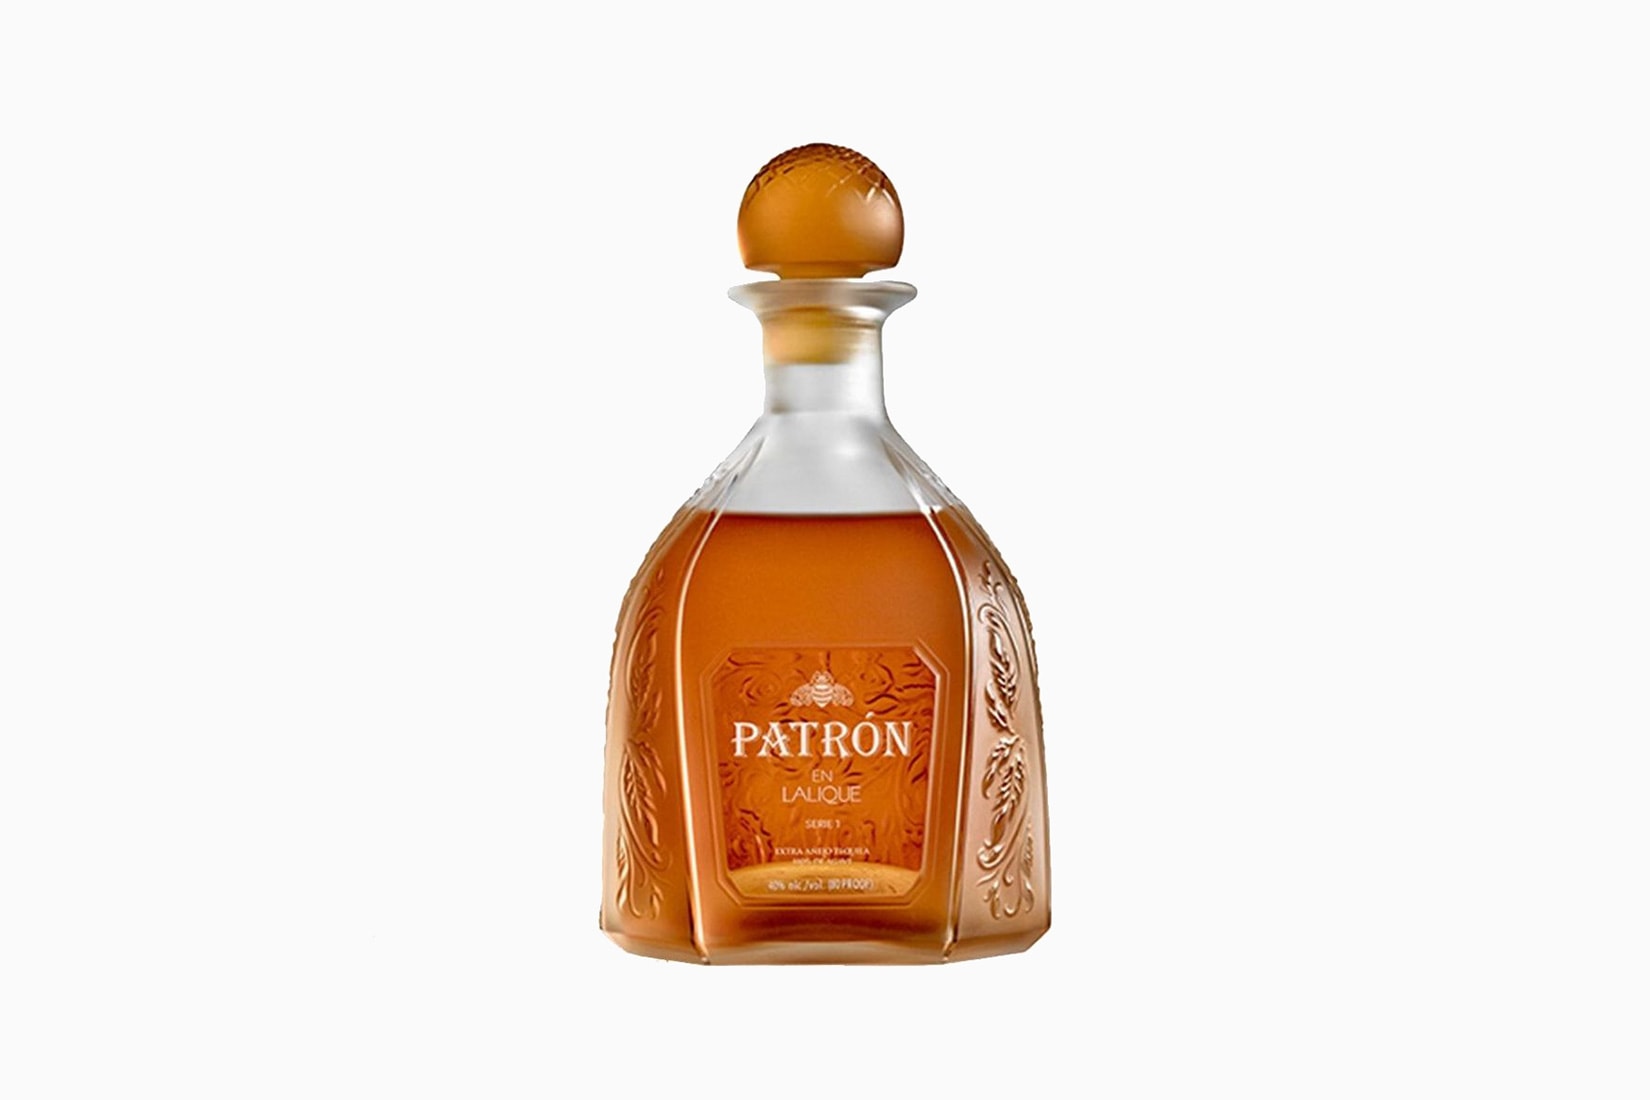 patron tequila en lalique bottle price size-Luxe Digital